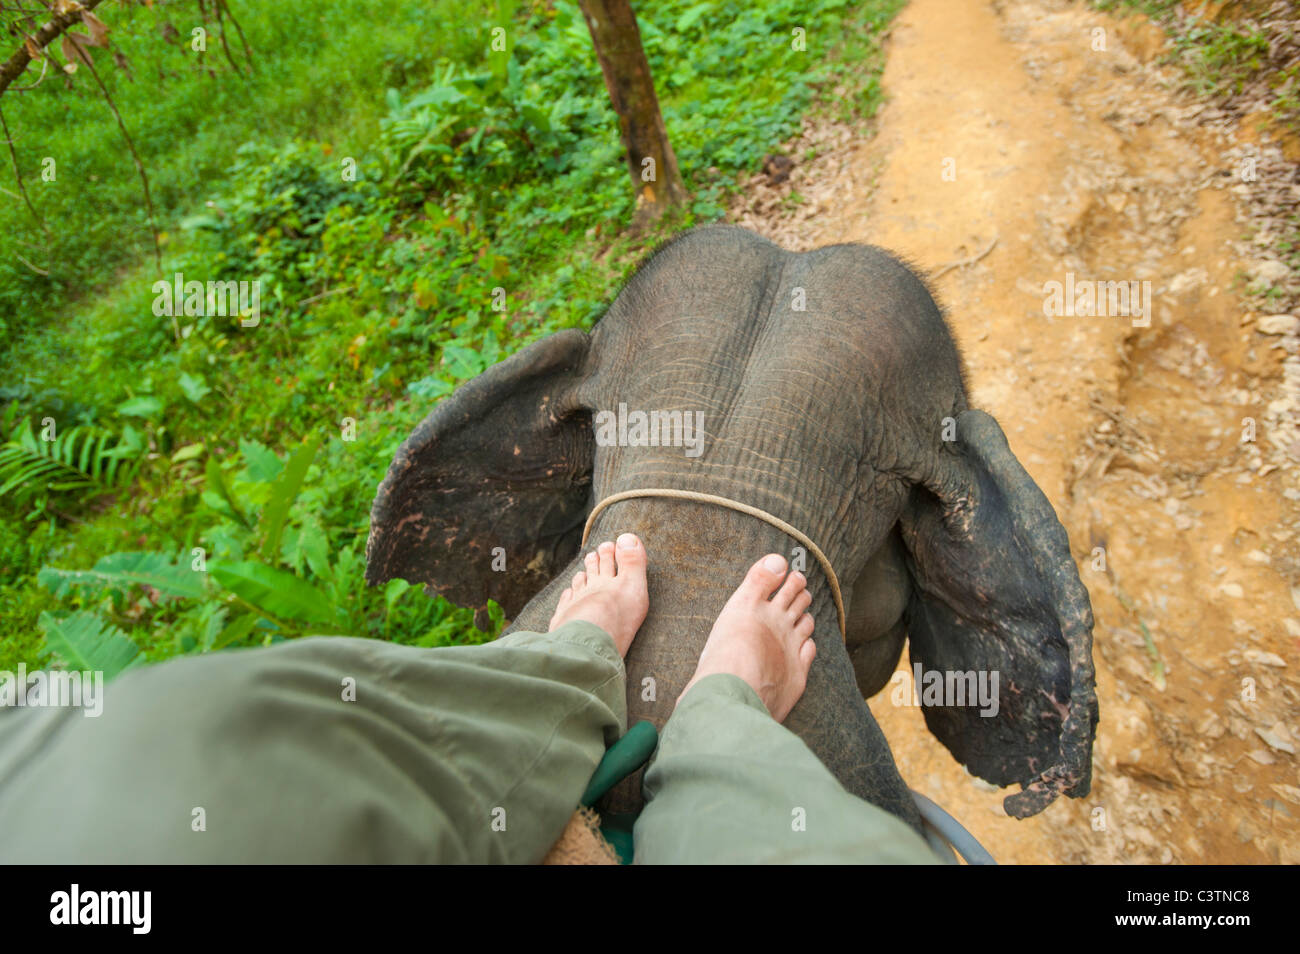 In groppa ad un elefante su un elefanti torna proprio forzerà ride spostare la guida di sterzo regola governare sterzo guida mahout elefant gamba gambe Foto Stock